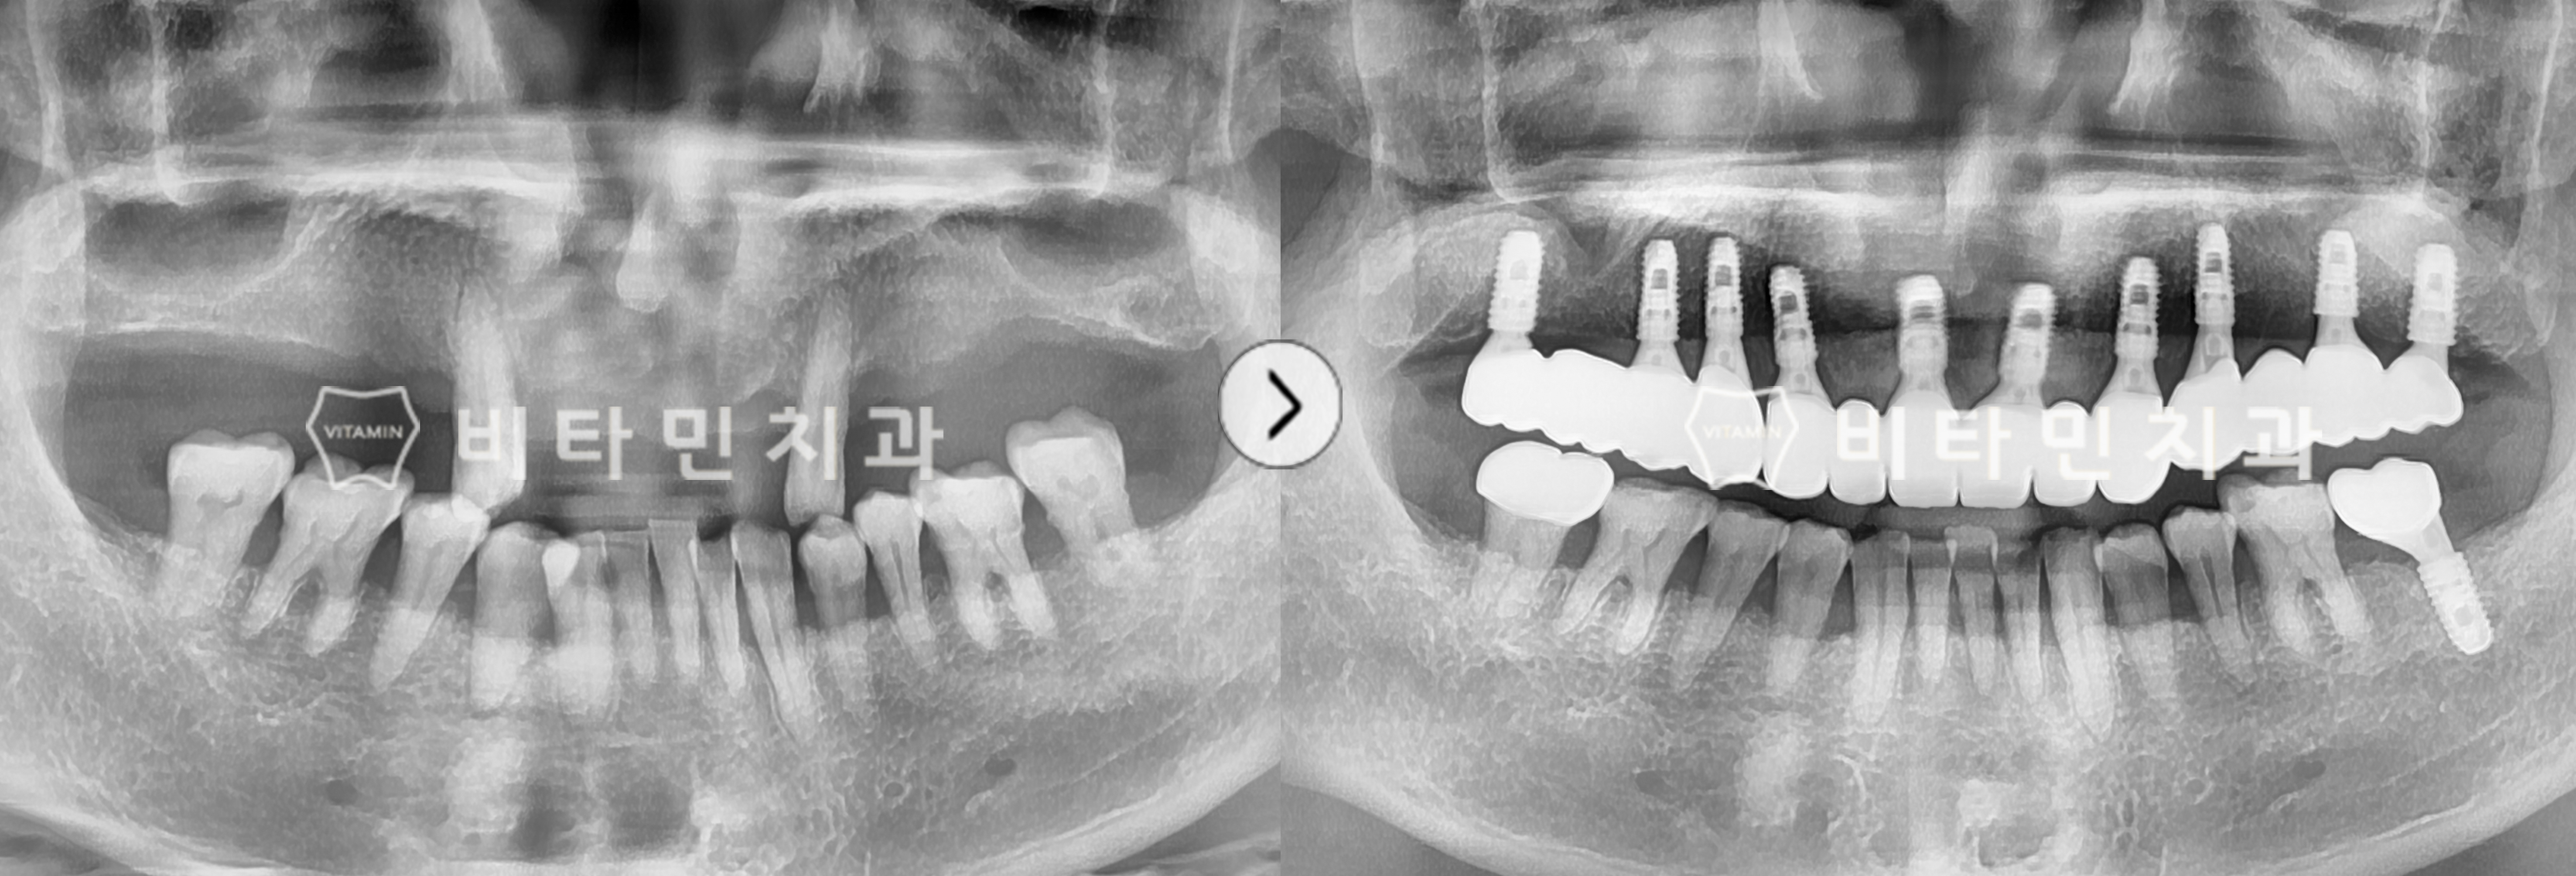 부분틀니 불편해 전체 임플란트 식립으로 치아의 기능성과 심미성 회복